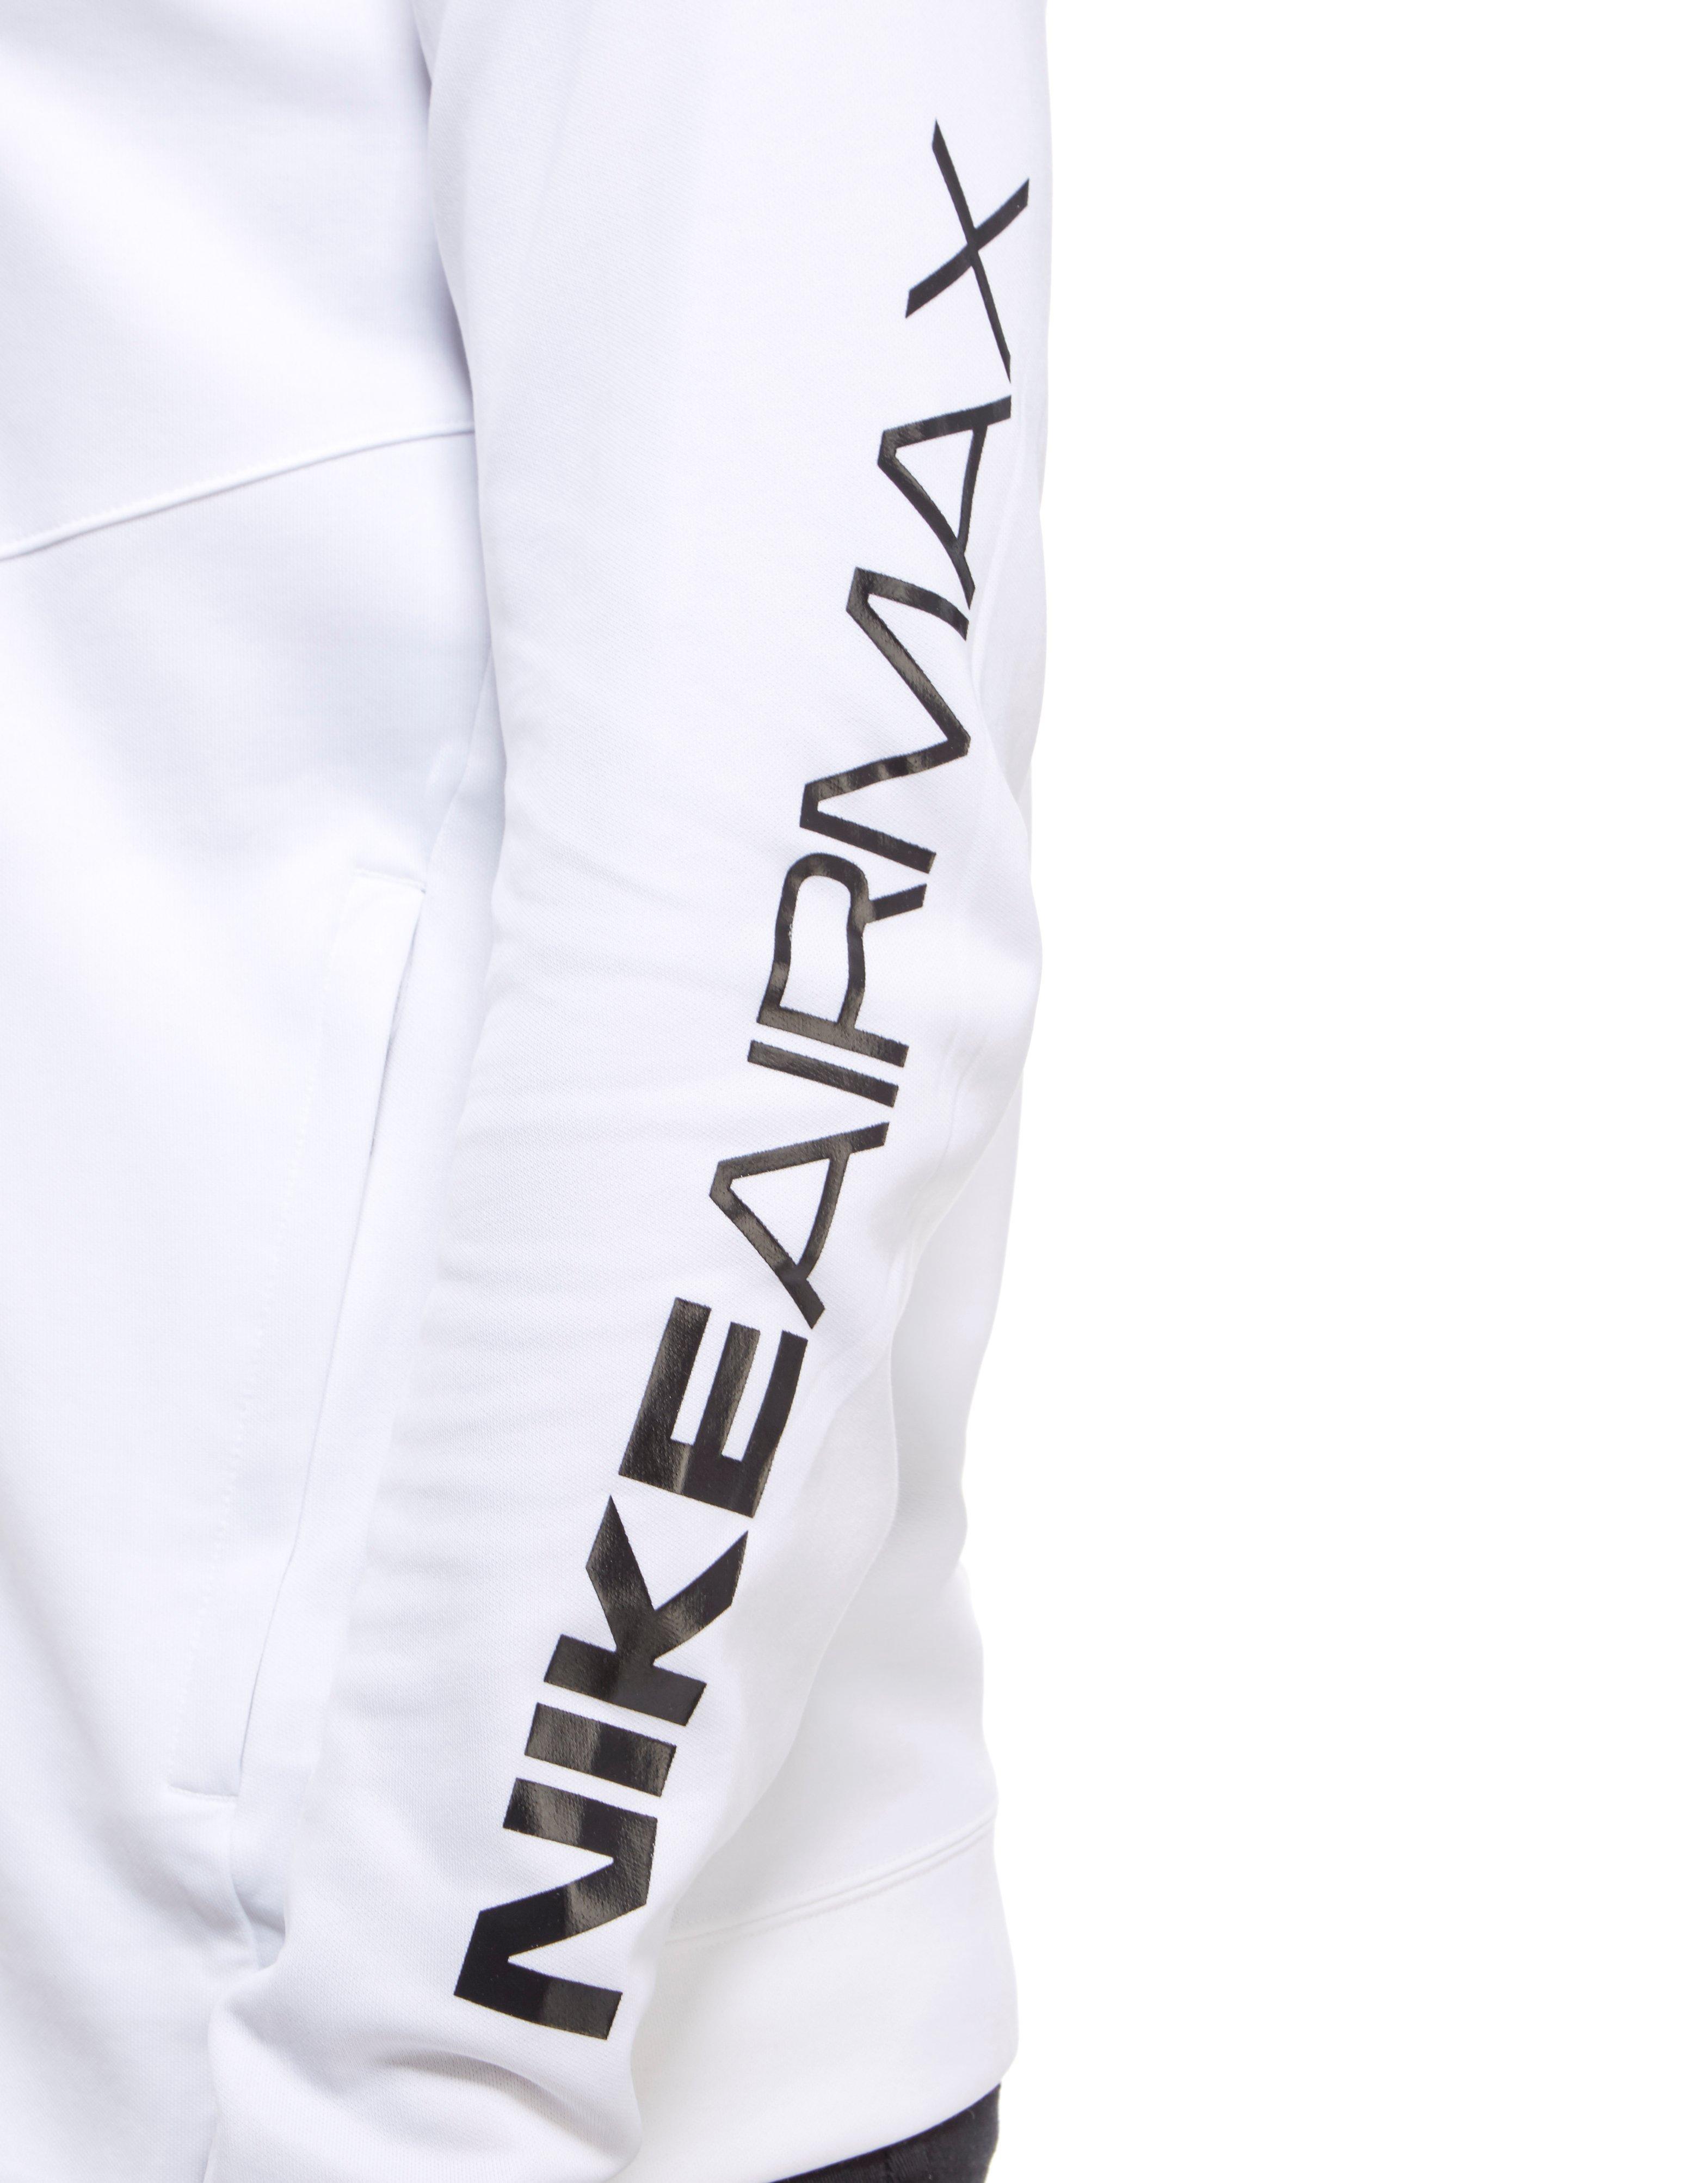 white air max jumper